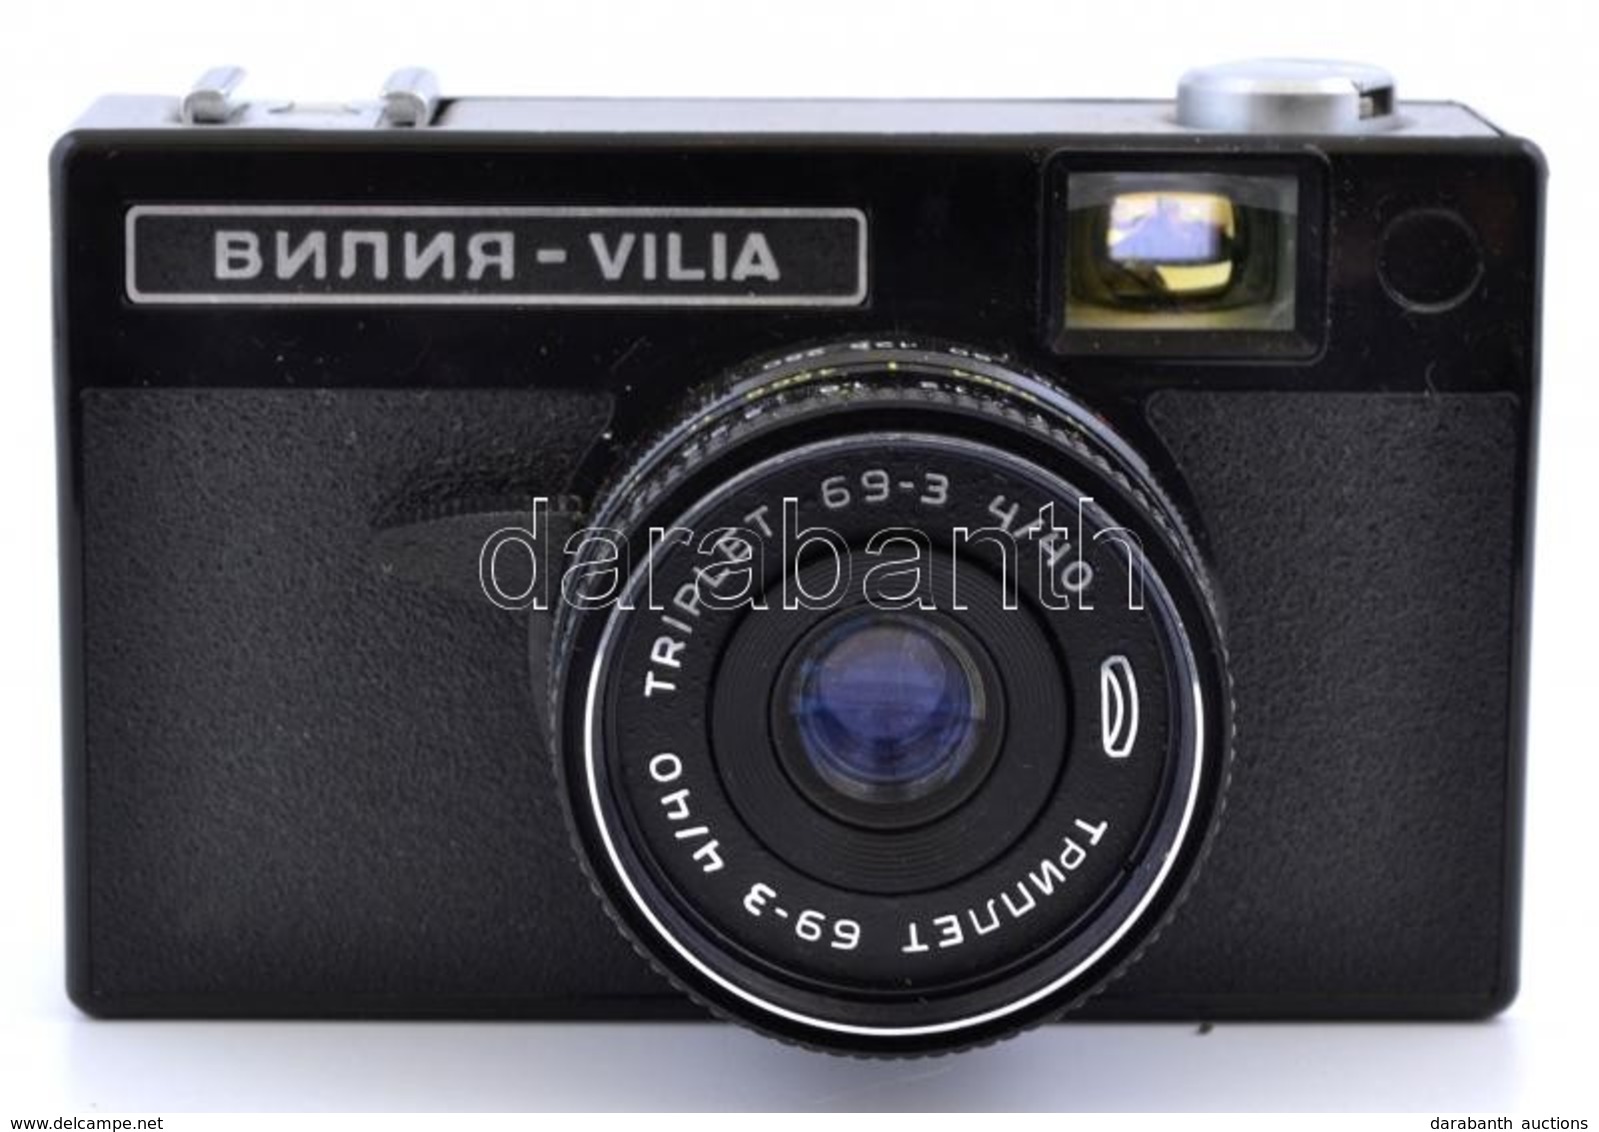 Belomo Vilia Fényképezőgép Triplet 69-3 4/40 Objektívvel, Eredeti Tokjában, Jó állapotban / Vintage Soviet 35mm Film Cam - Fotoapparate